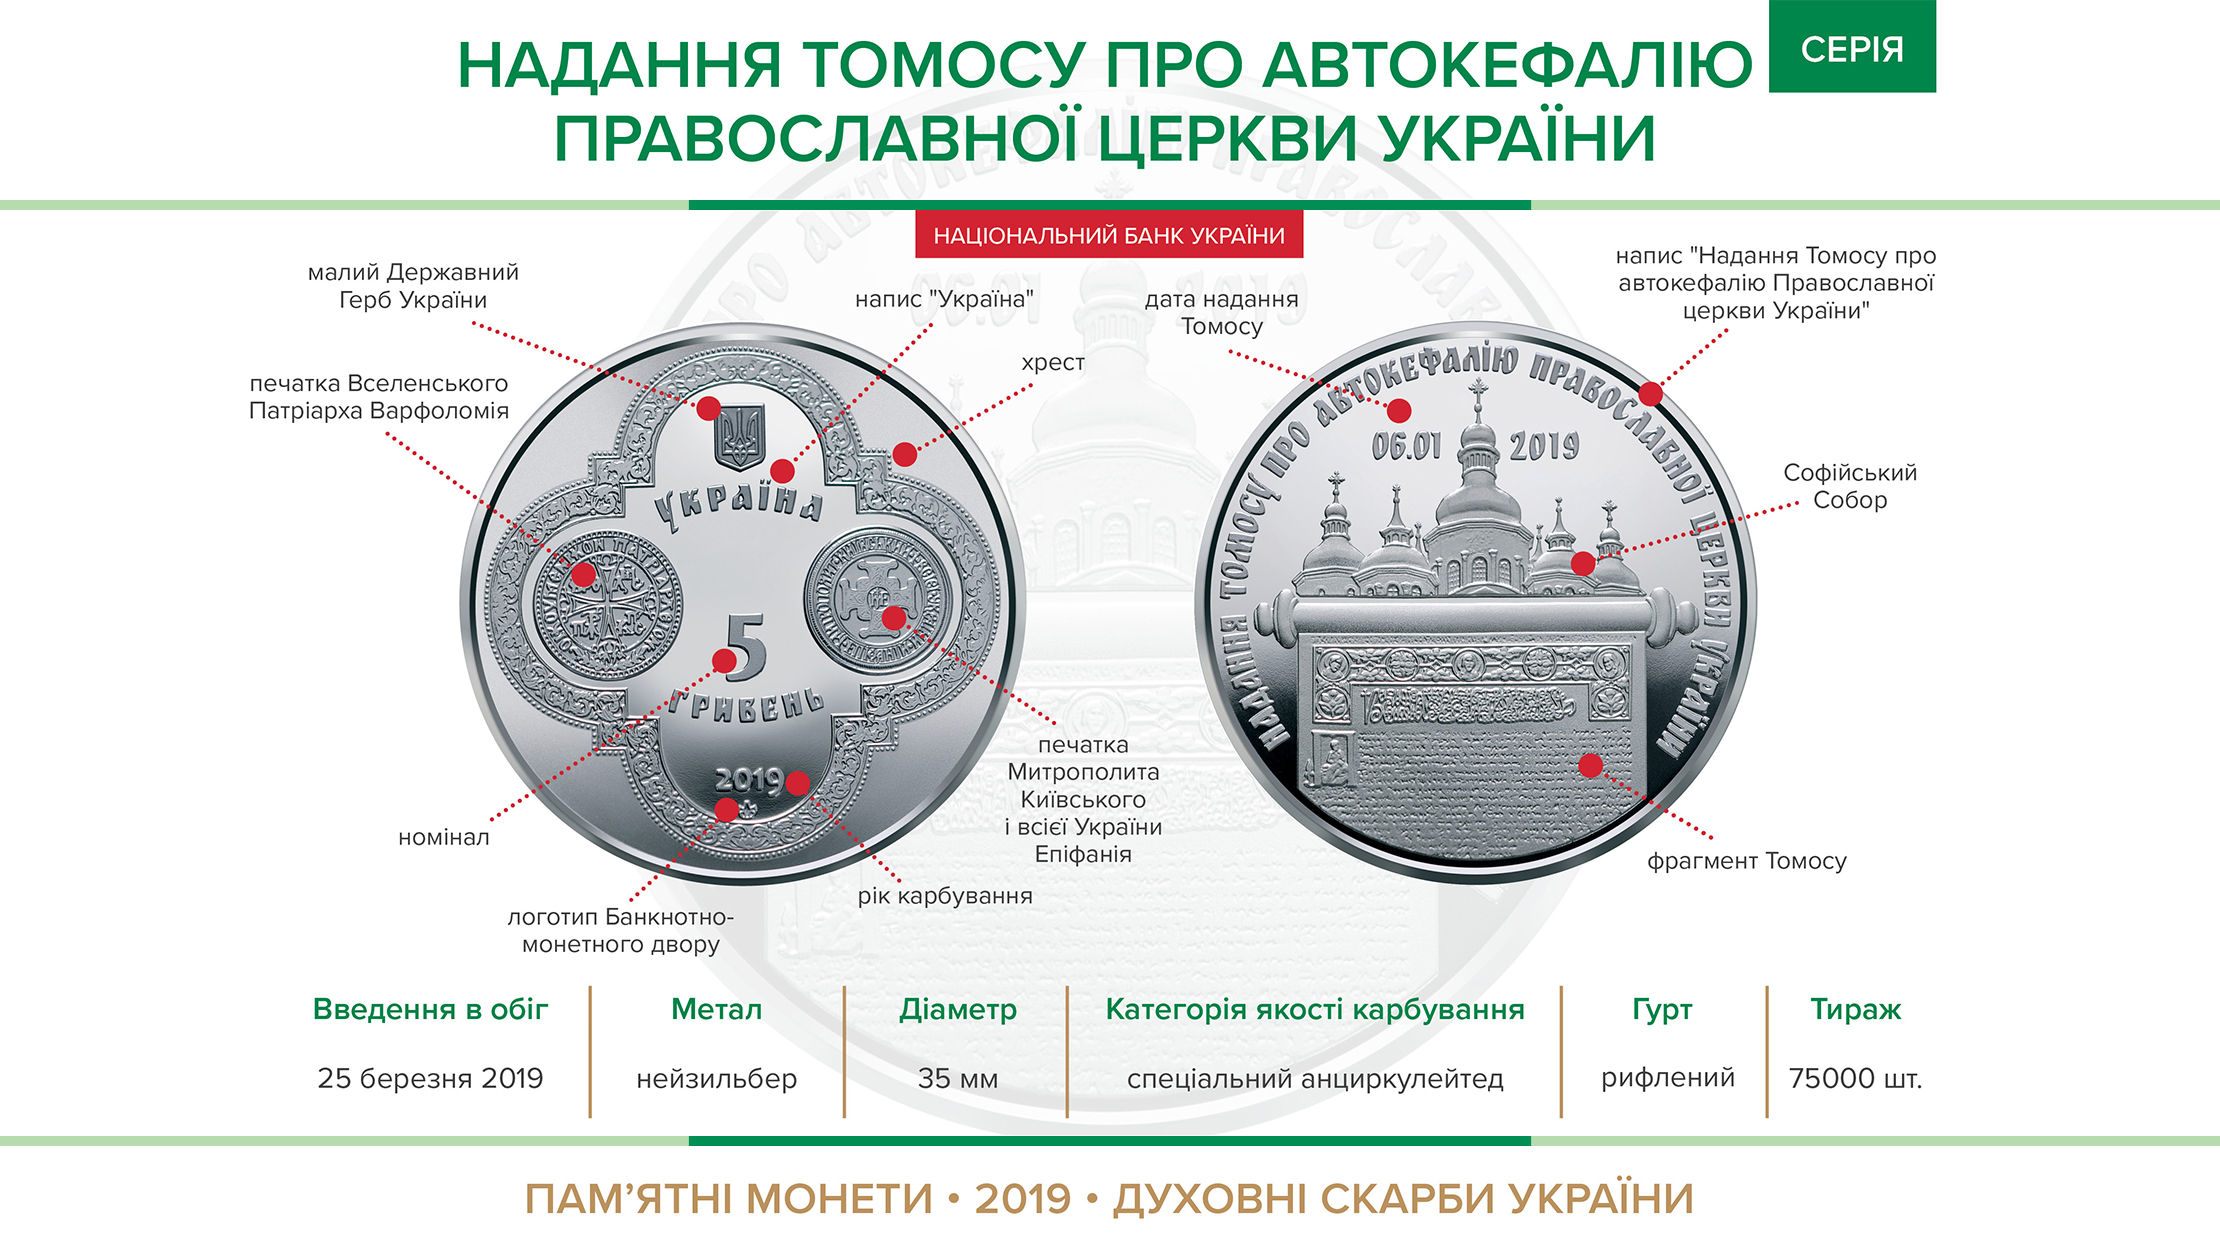 Пам'ятна монета "Надання Томосу про автокефалію Православної церкви України" (нейзильбер) вводиться в обіг з 25 березня 2019 року